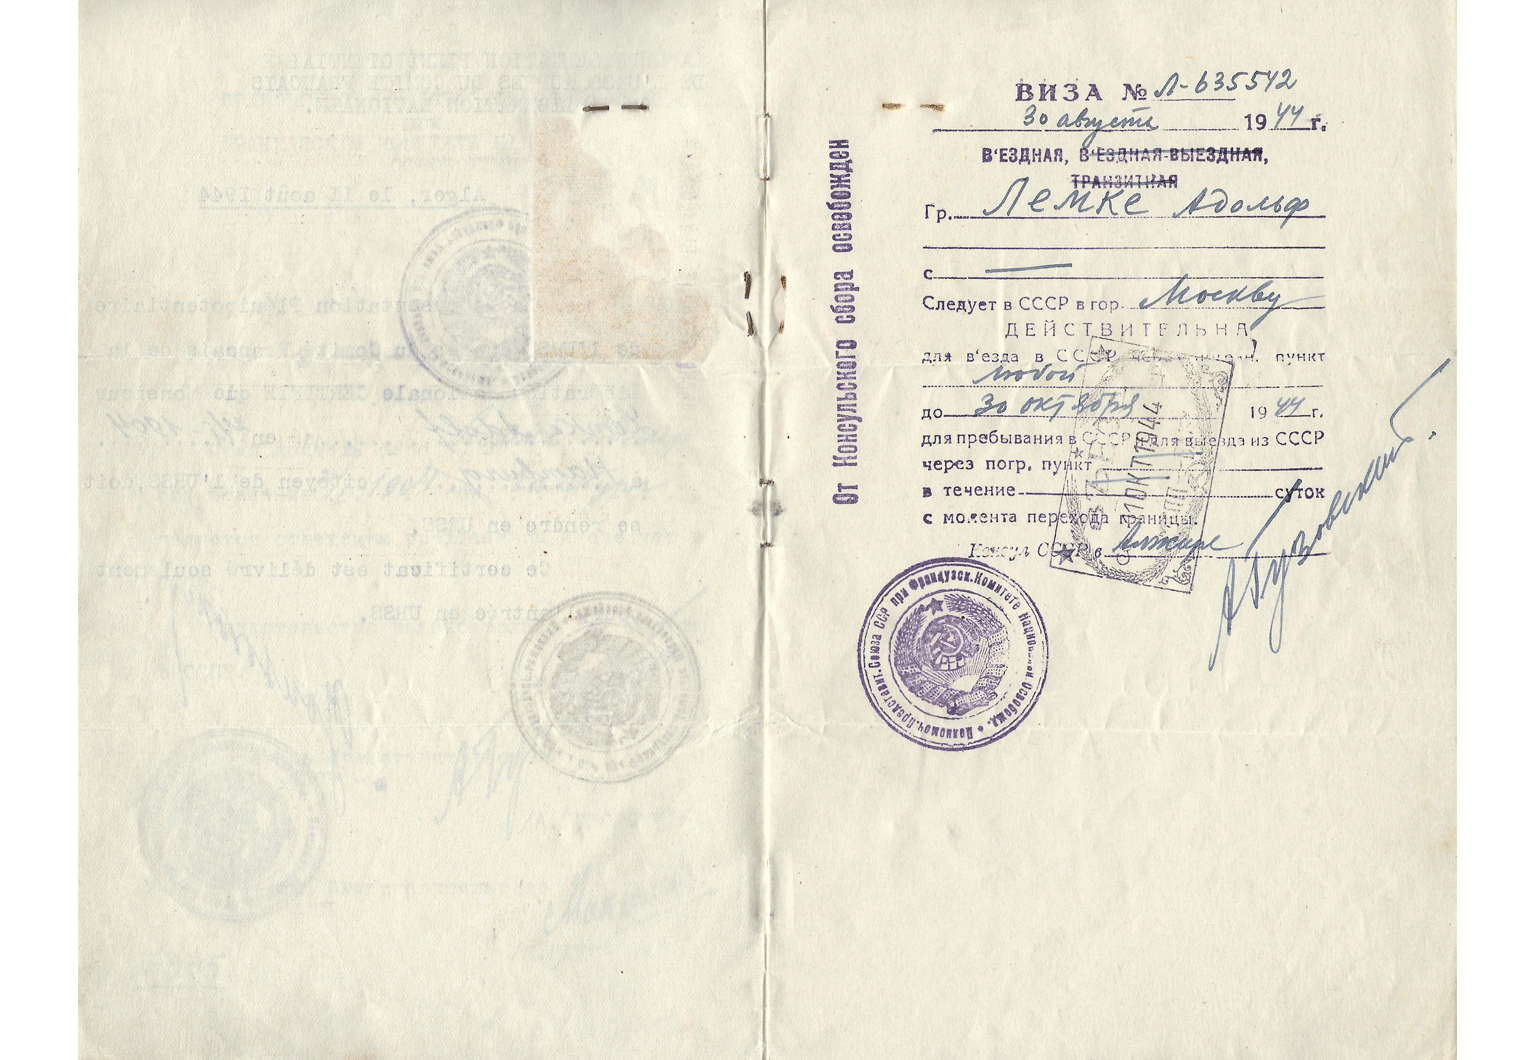 Unique Soviet travel document